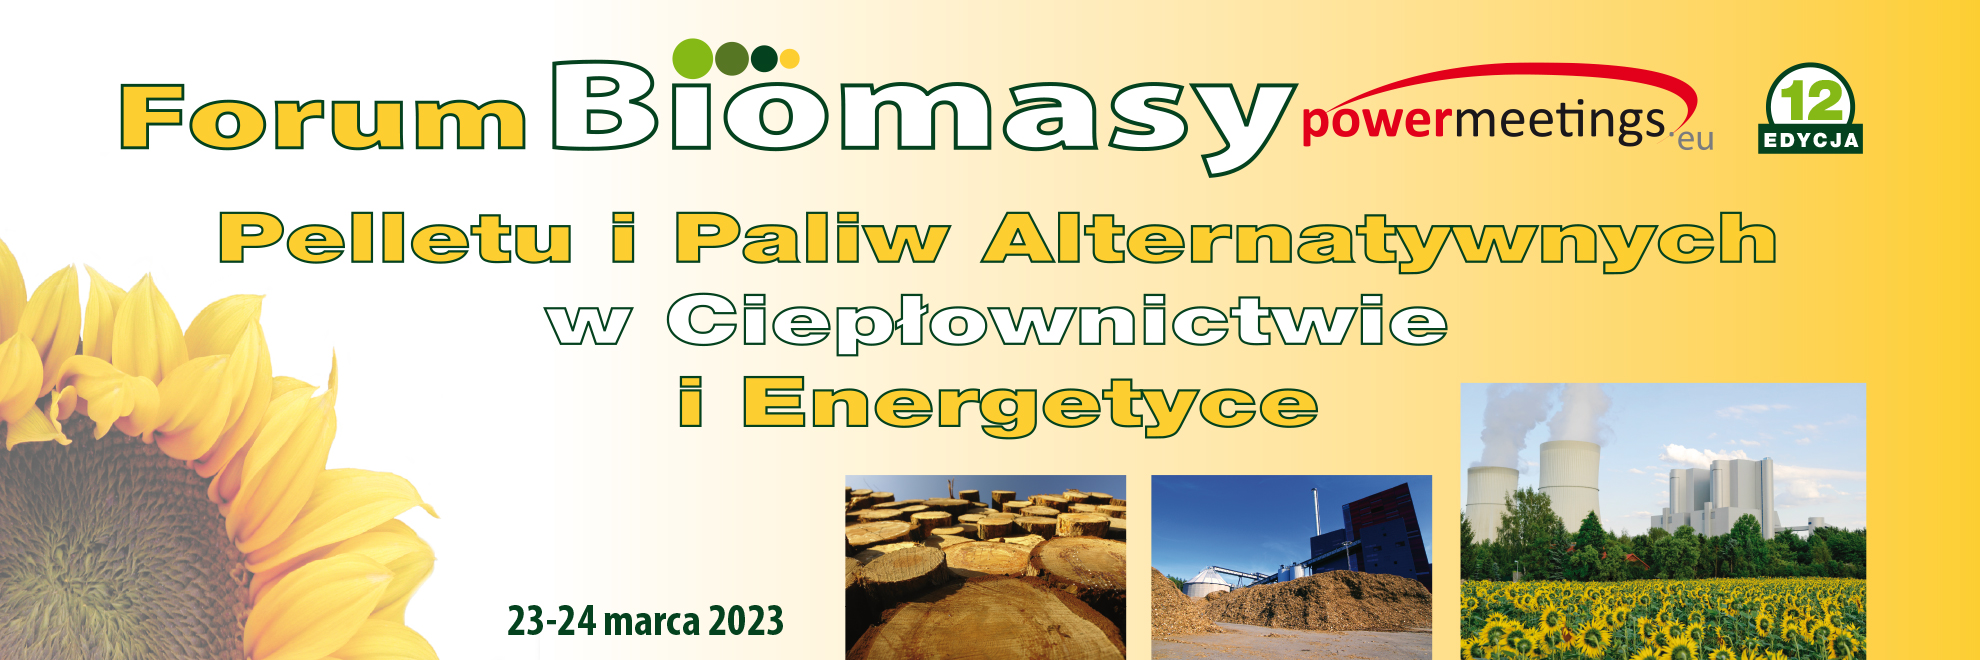 XII Forum Biomasy, Pelletu i RDF w Ciepłownictwie i Energetyce 2023